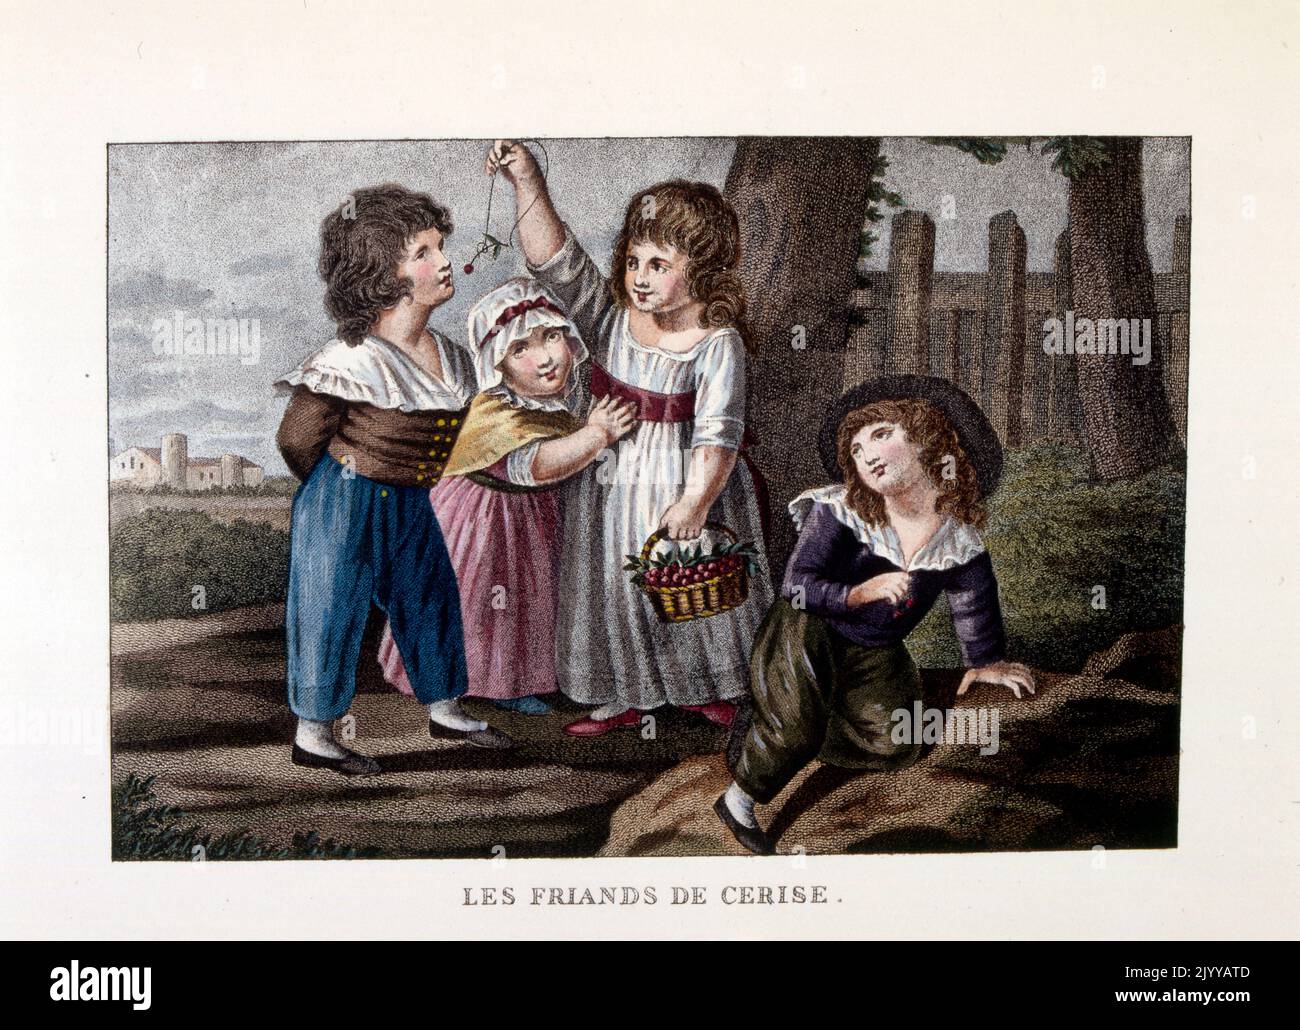 Gemälde mit dem Titel „The Cherry Picker“; Bild von vier Kindern, von denen eines einen Korb mit Kirschen hält und ein anderes Kind füttert. Stockfoto